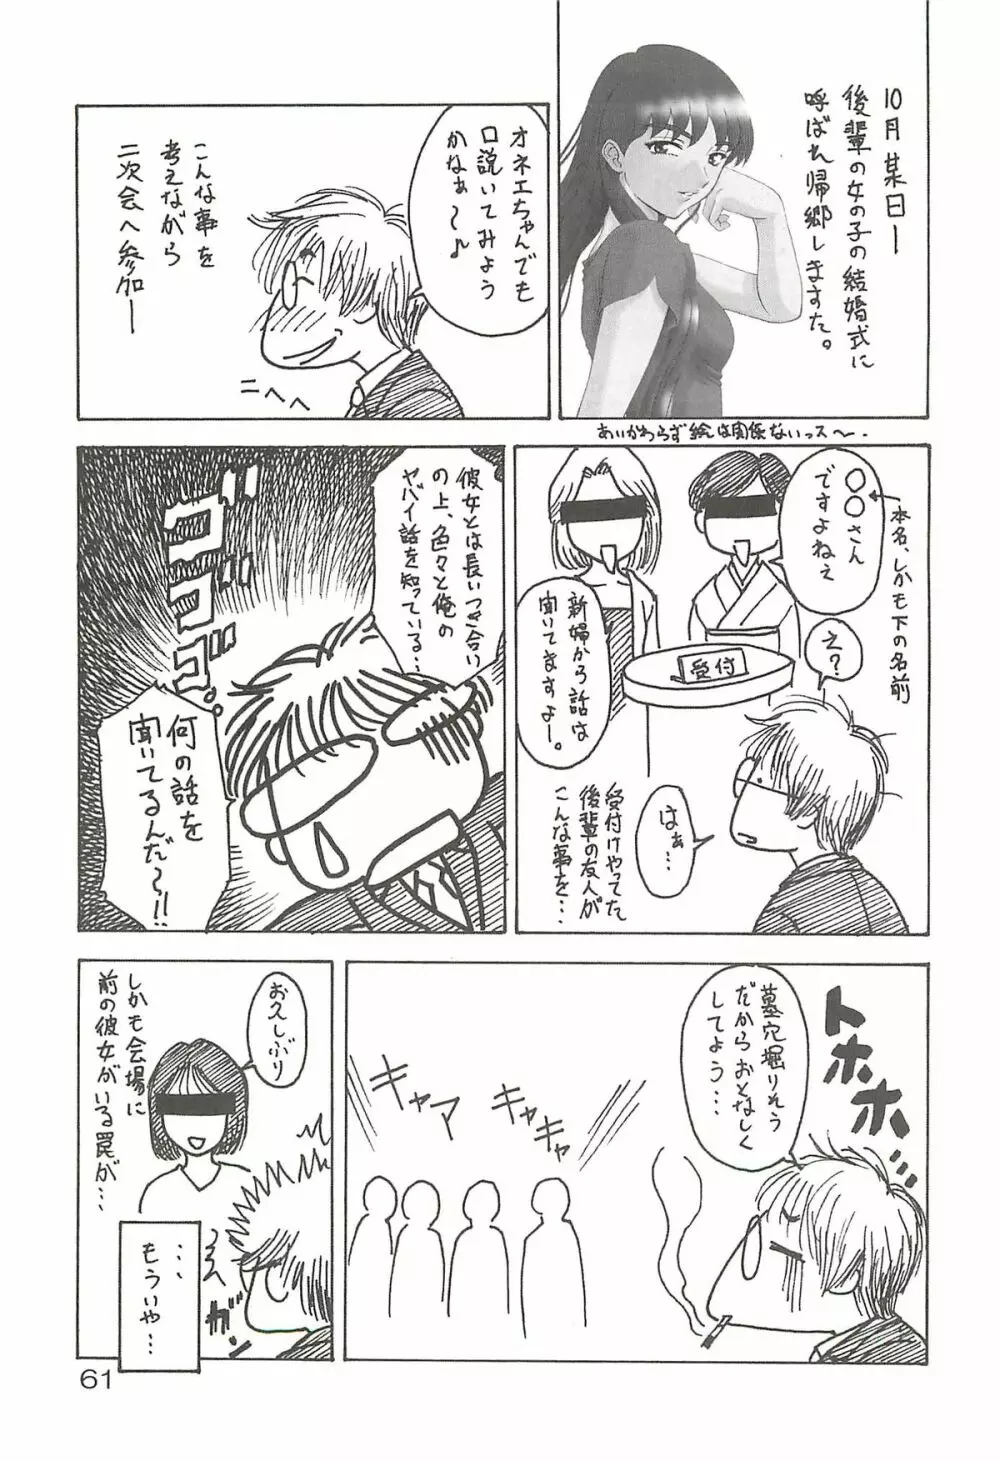 追放覚悟 Special edition Phase1 - page60